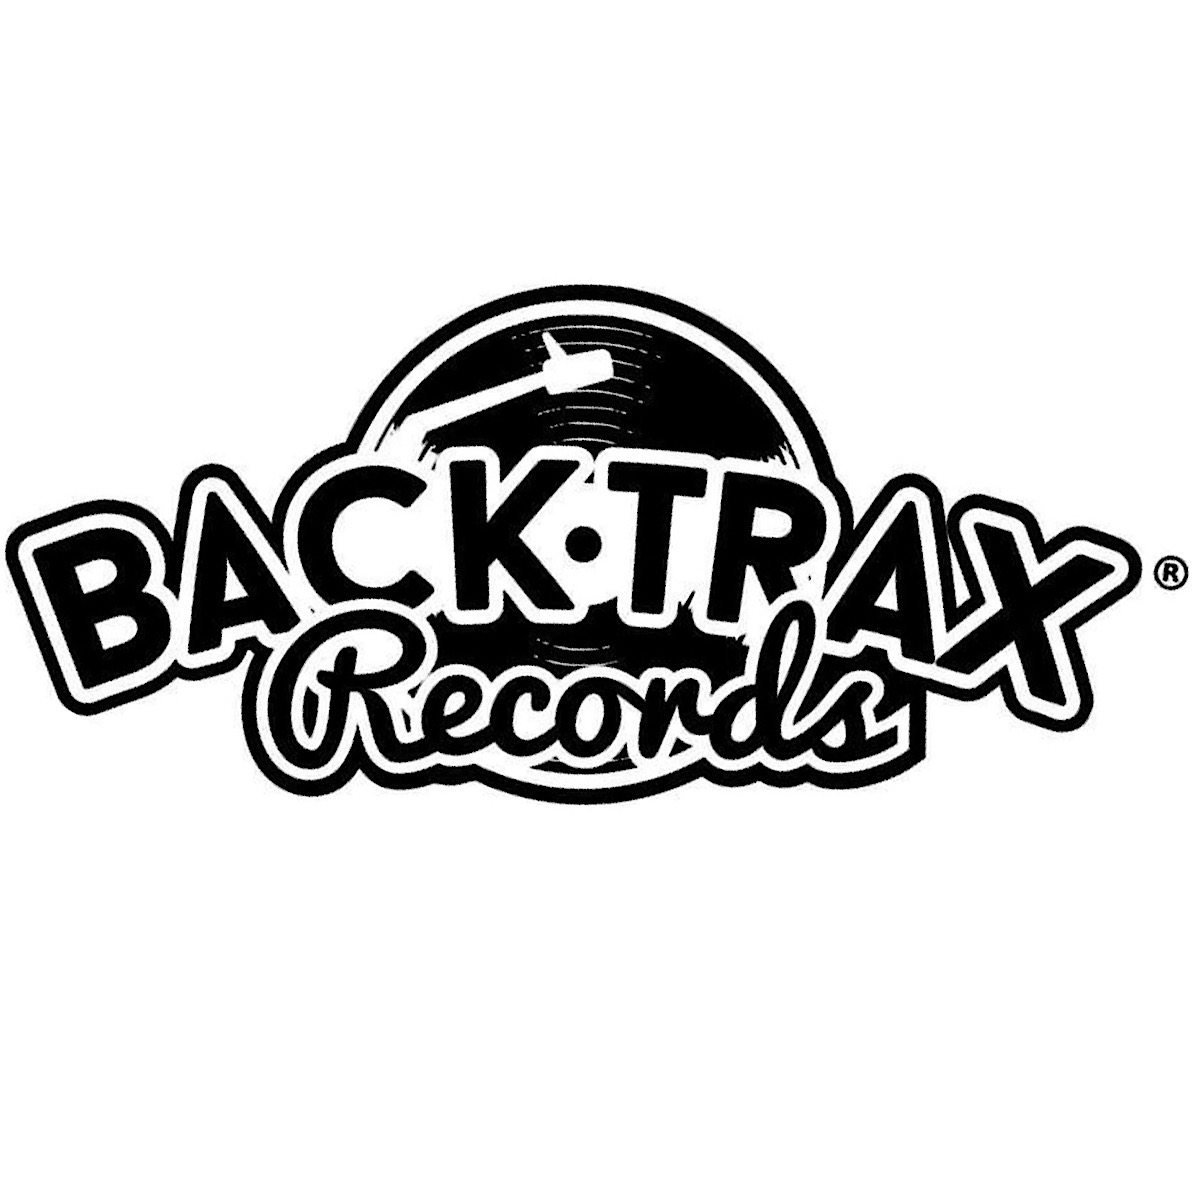 Art for backtraxrecords.com by website